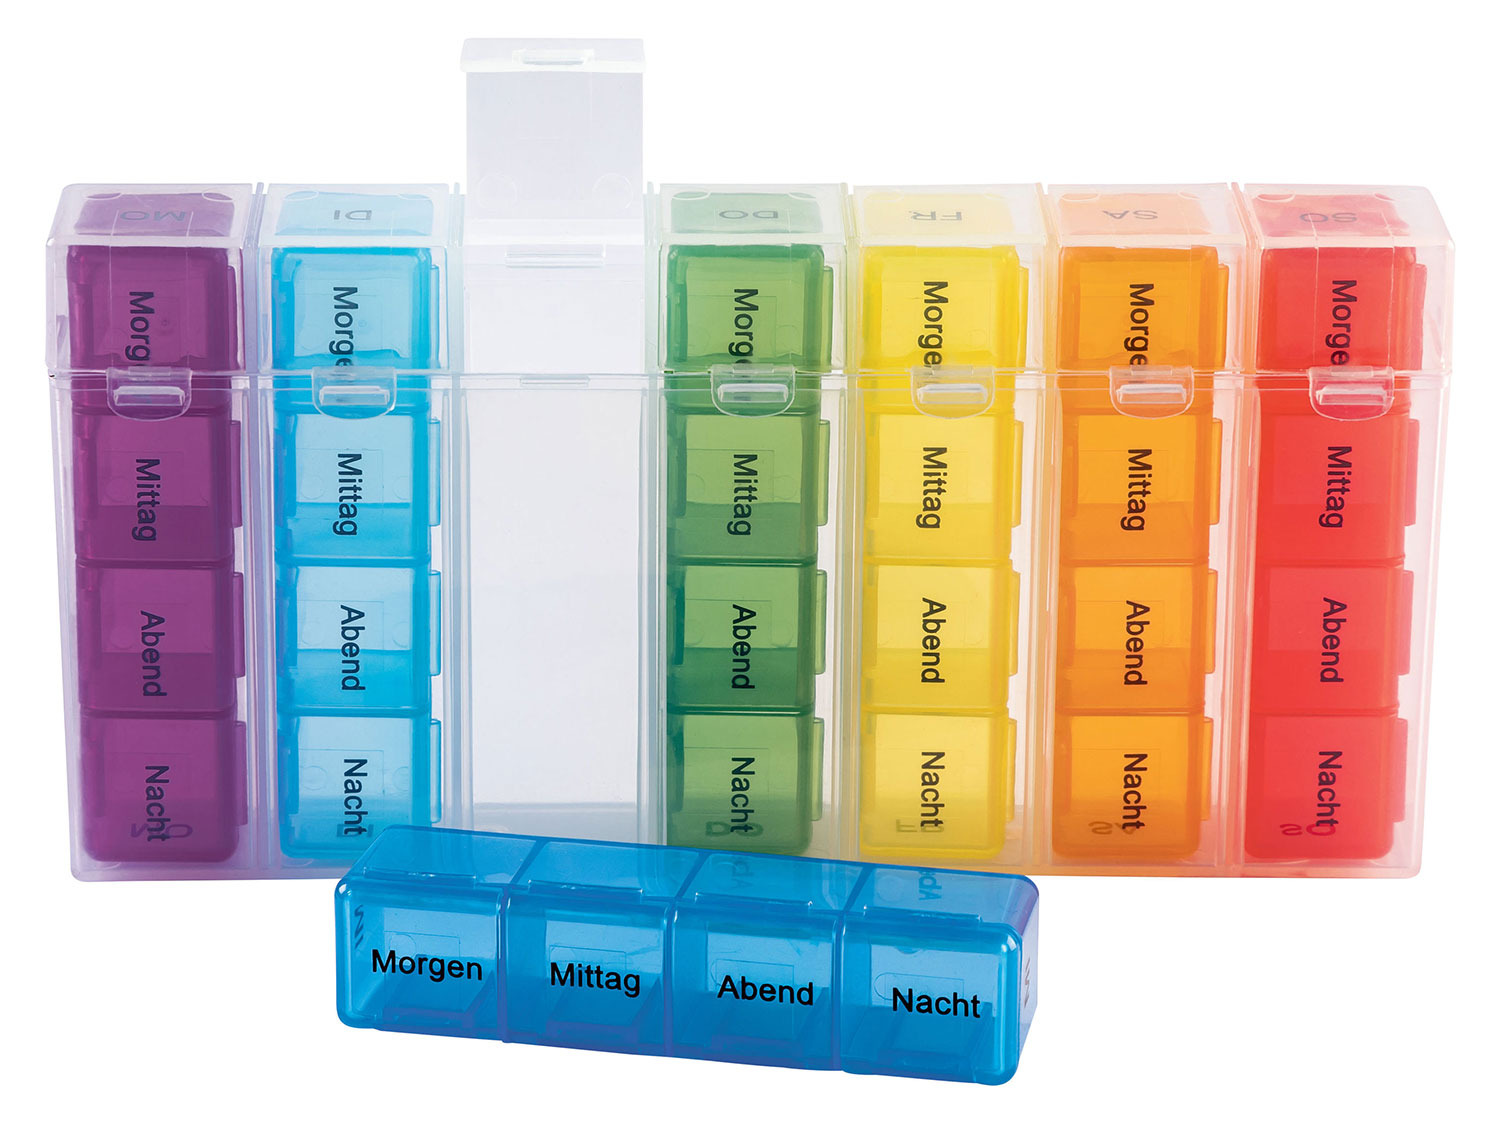 Medikamentendosierer mehrfarbig mit 7 Boxen